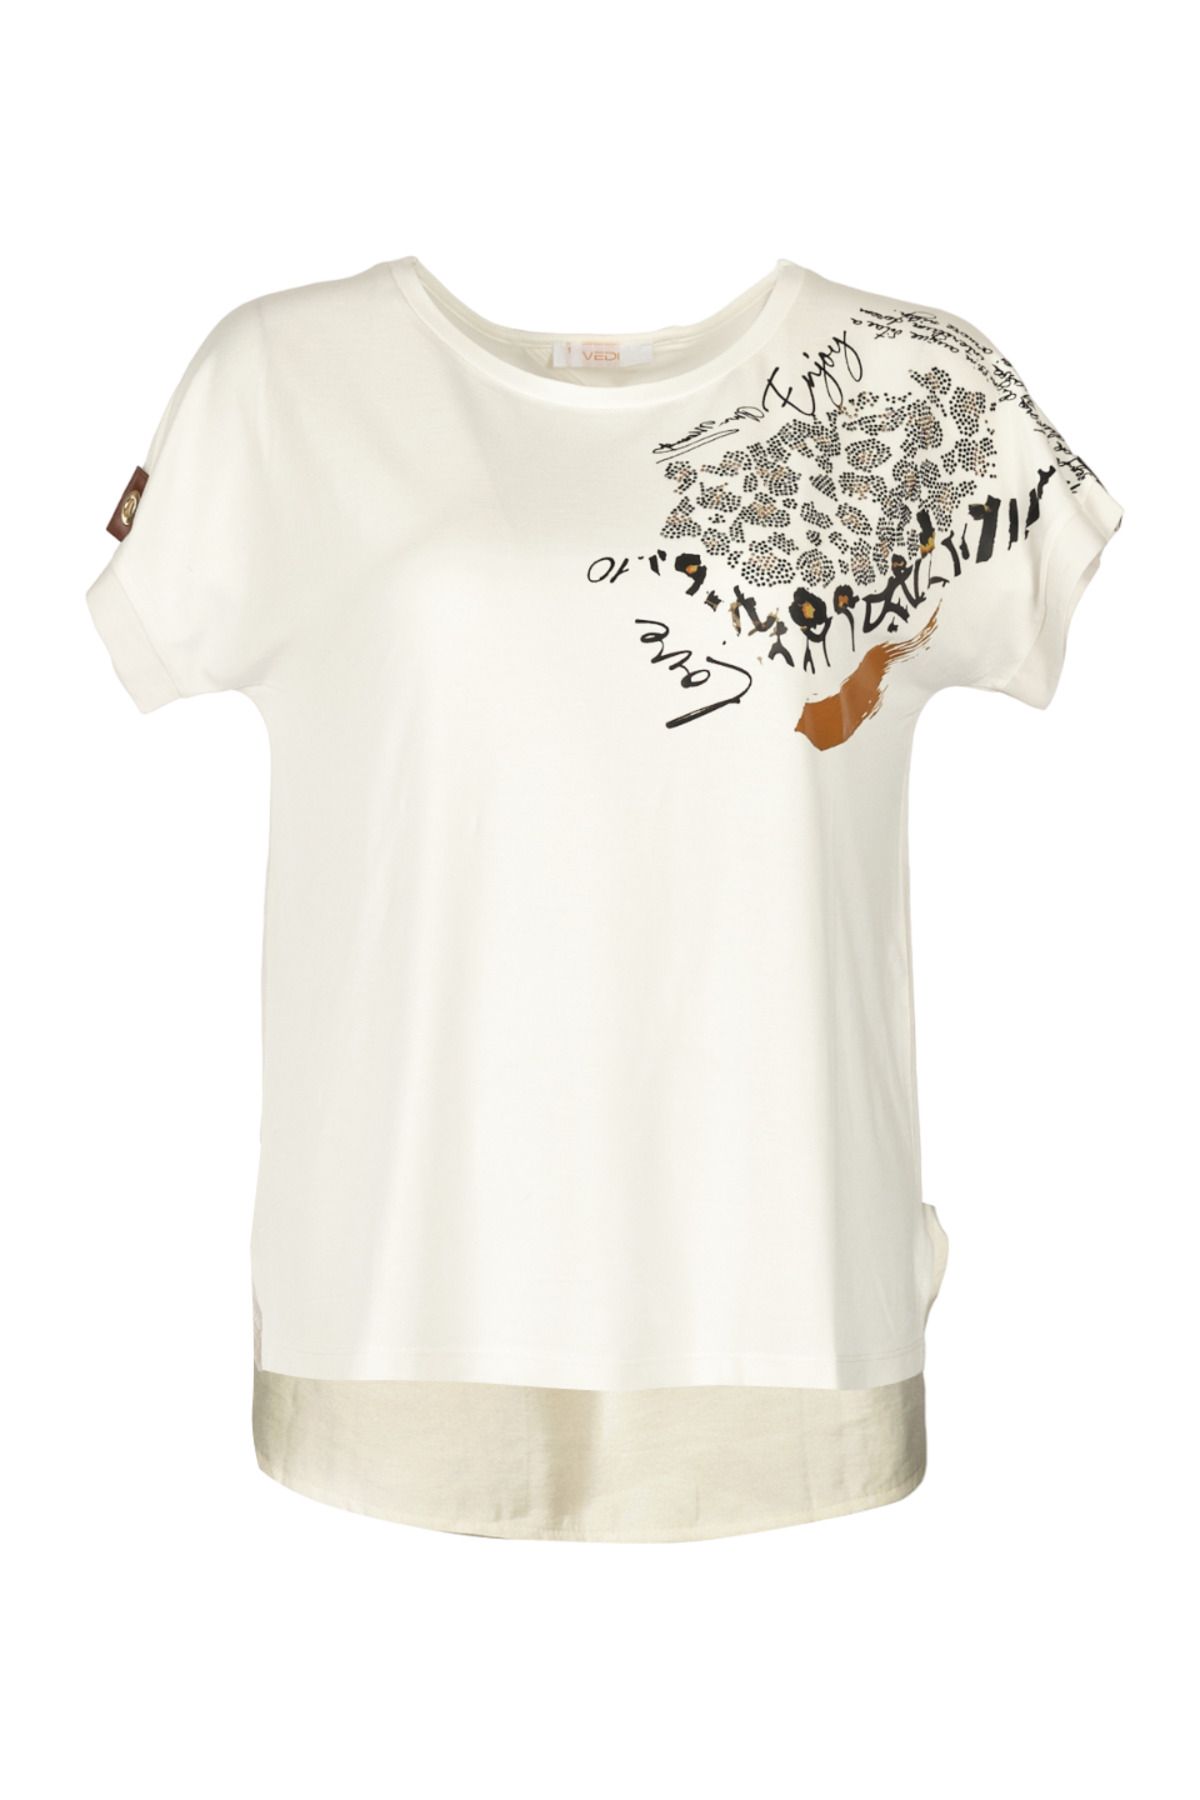 Vedi Yuvarlak Yaka Taşlı Düşük Kol Ekru Kadın T-shirt 2243030